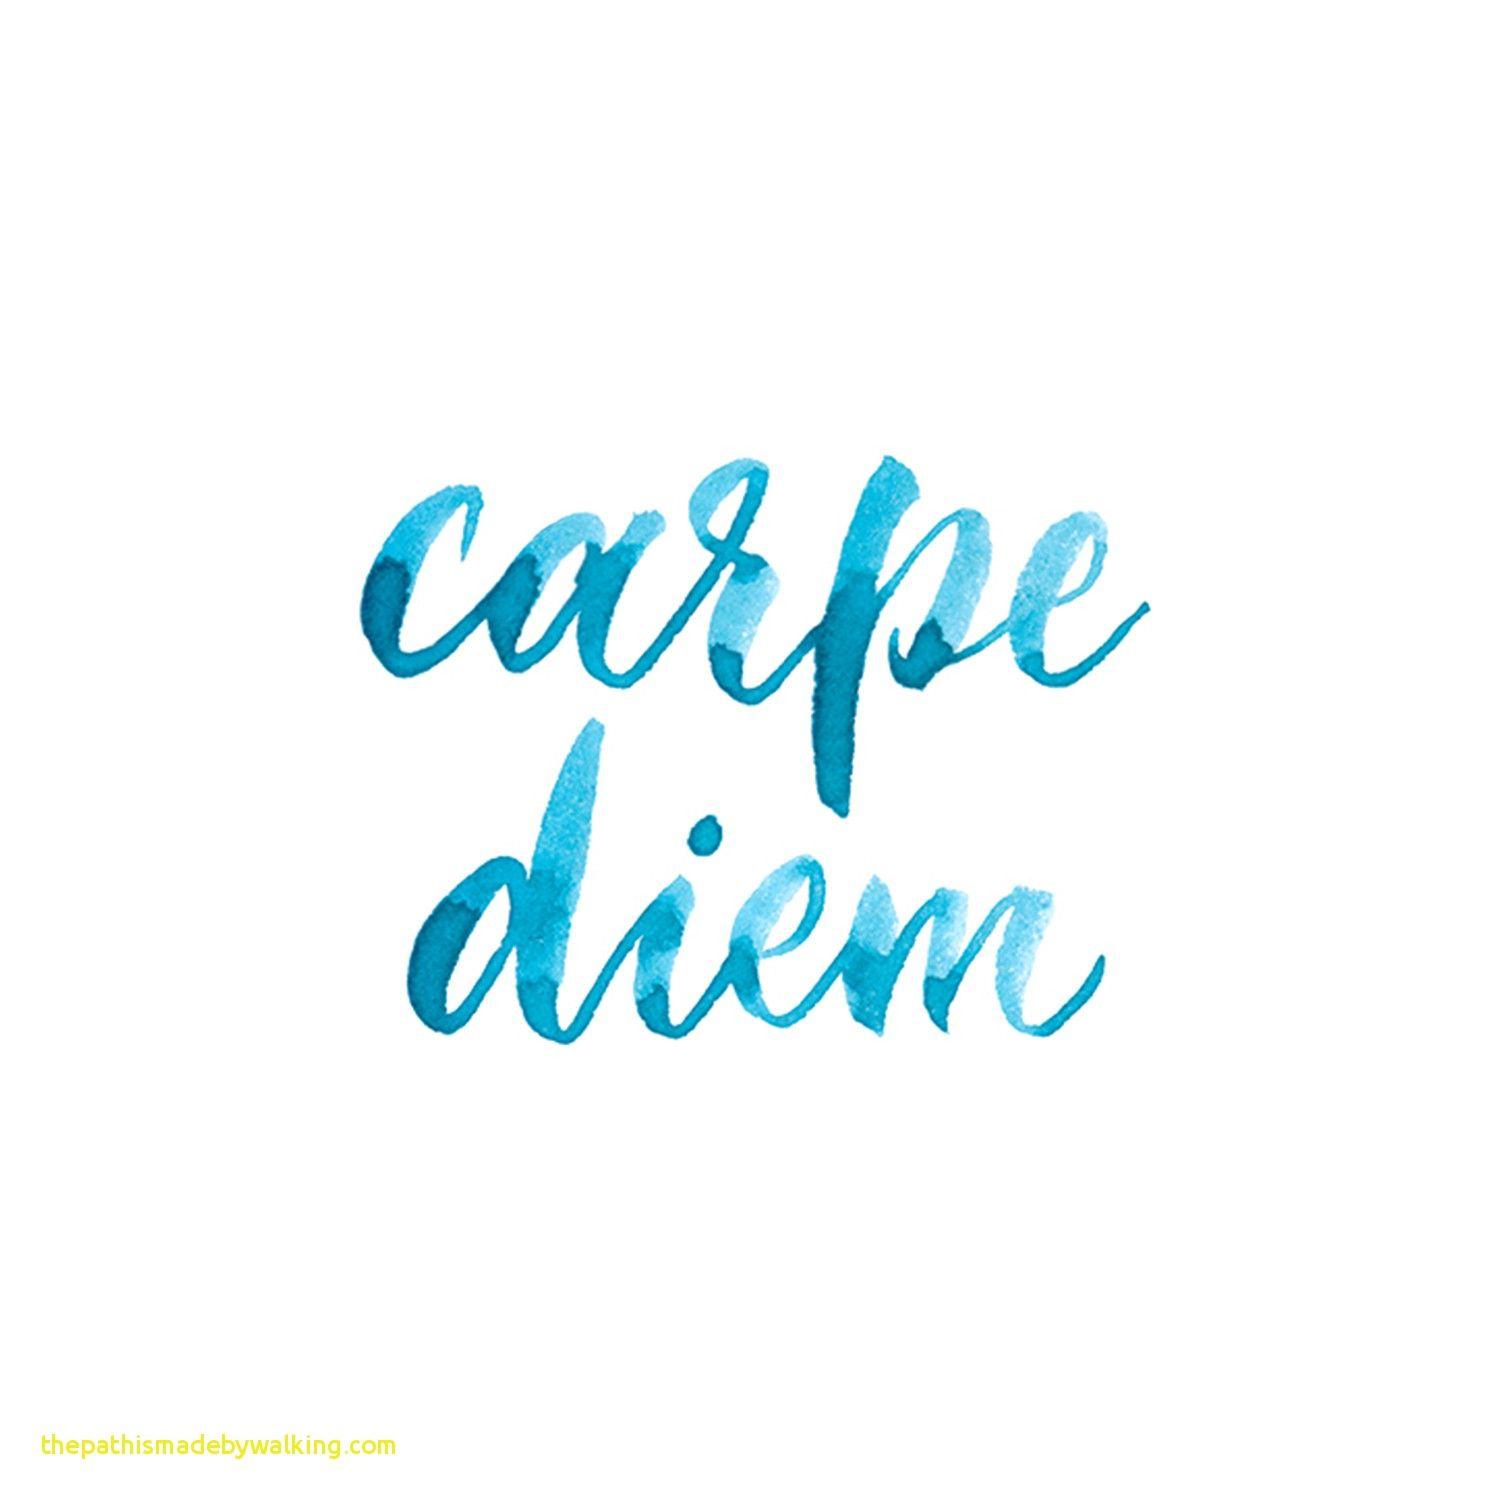 Carpe diem  wallpaper wallpaper by nikinkcreate - Download on